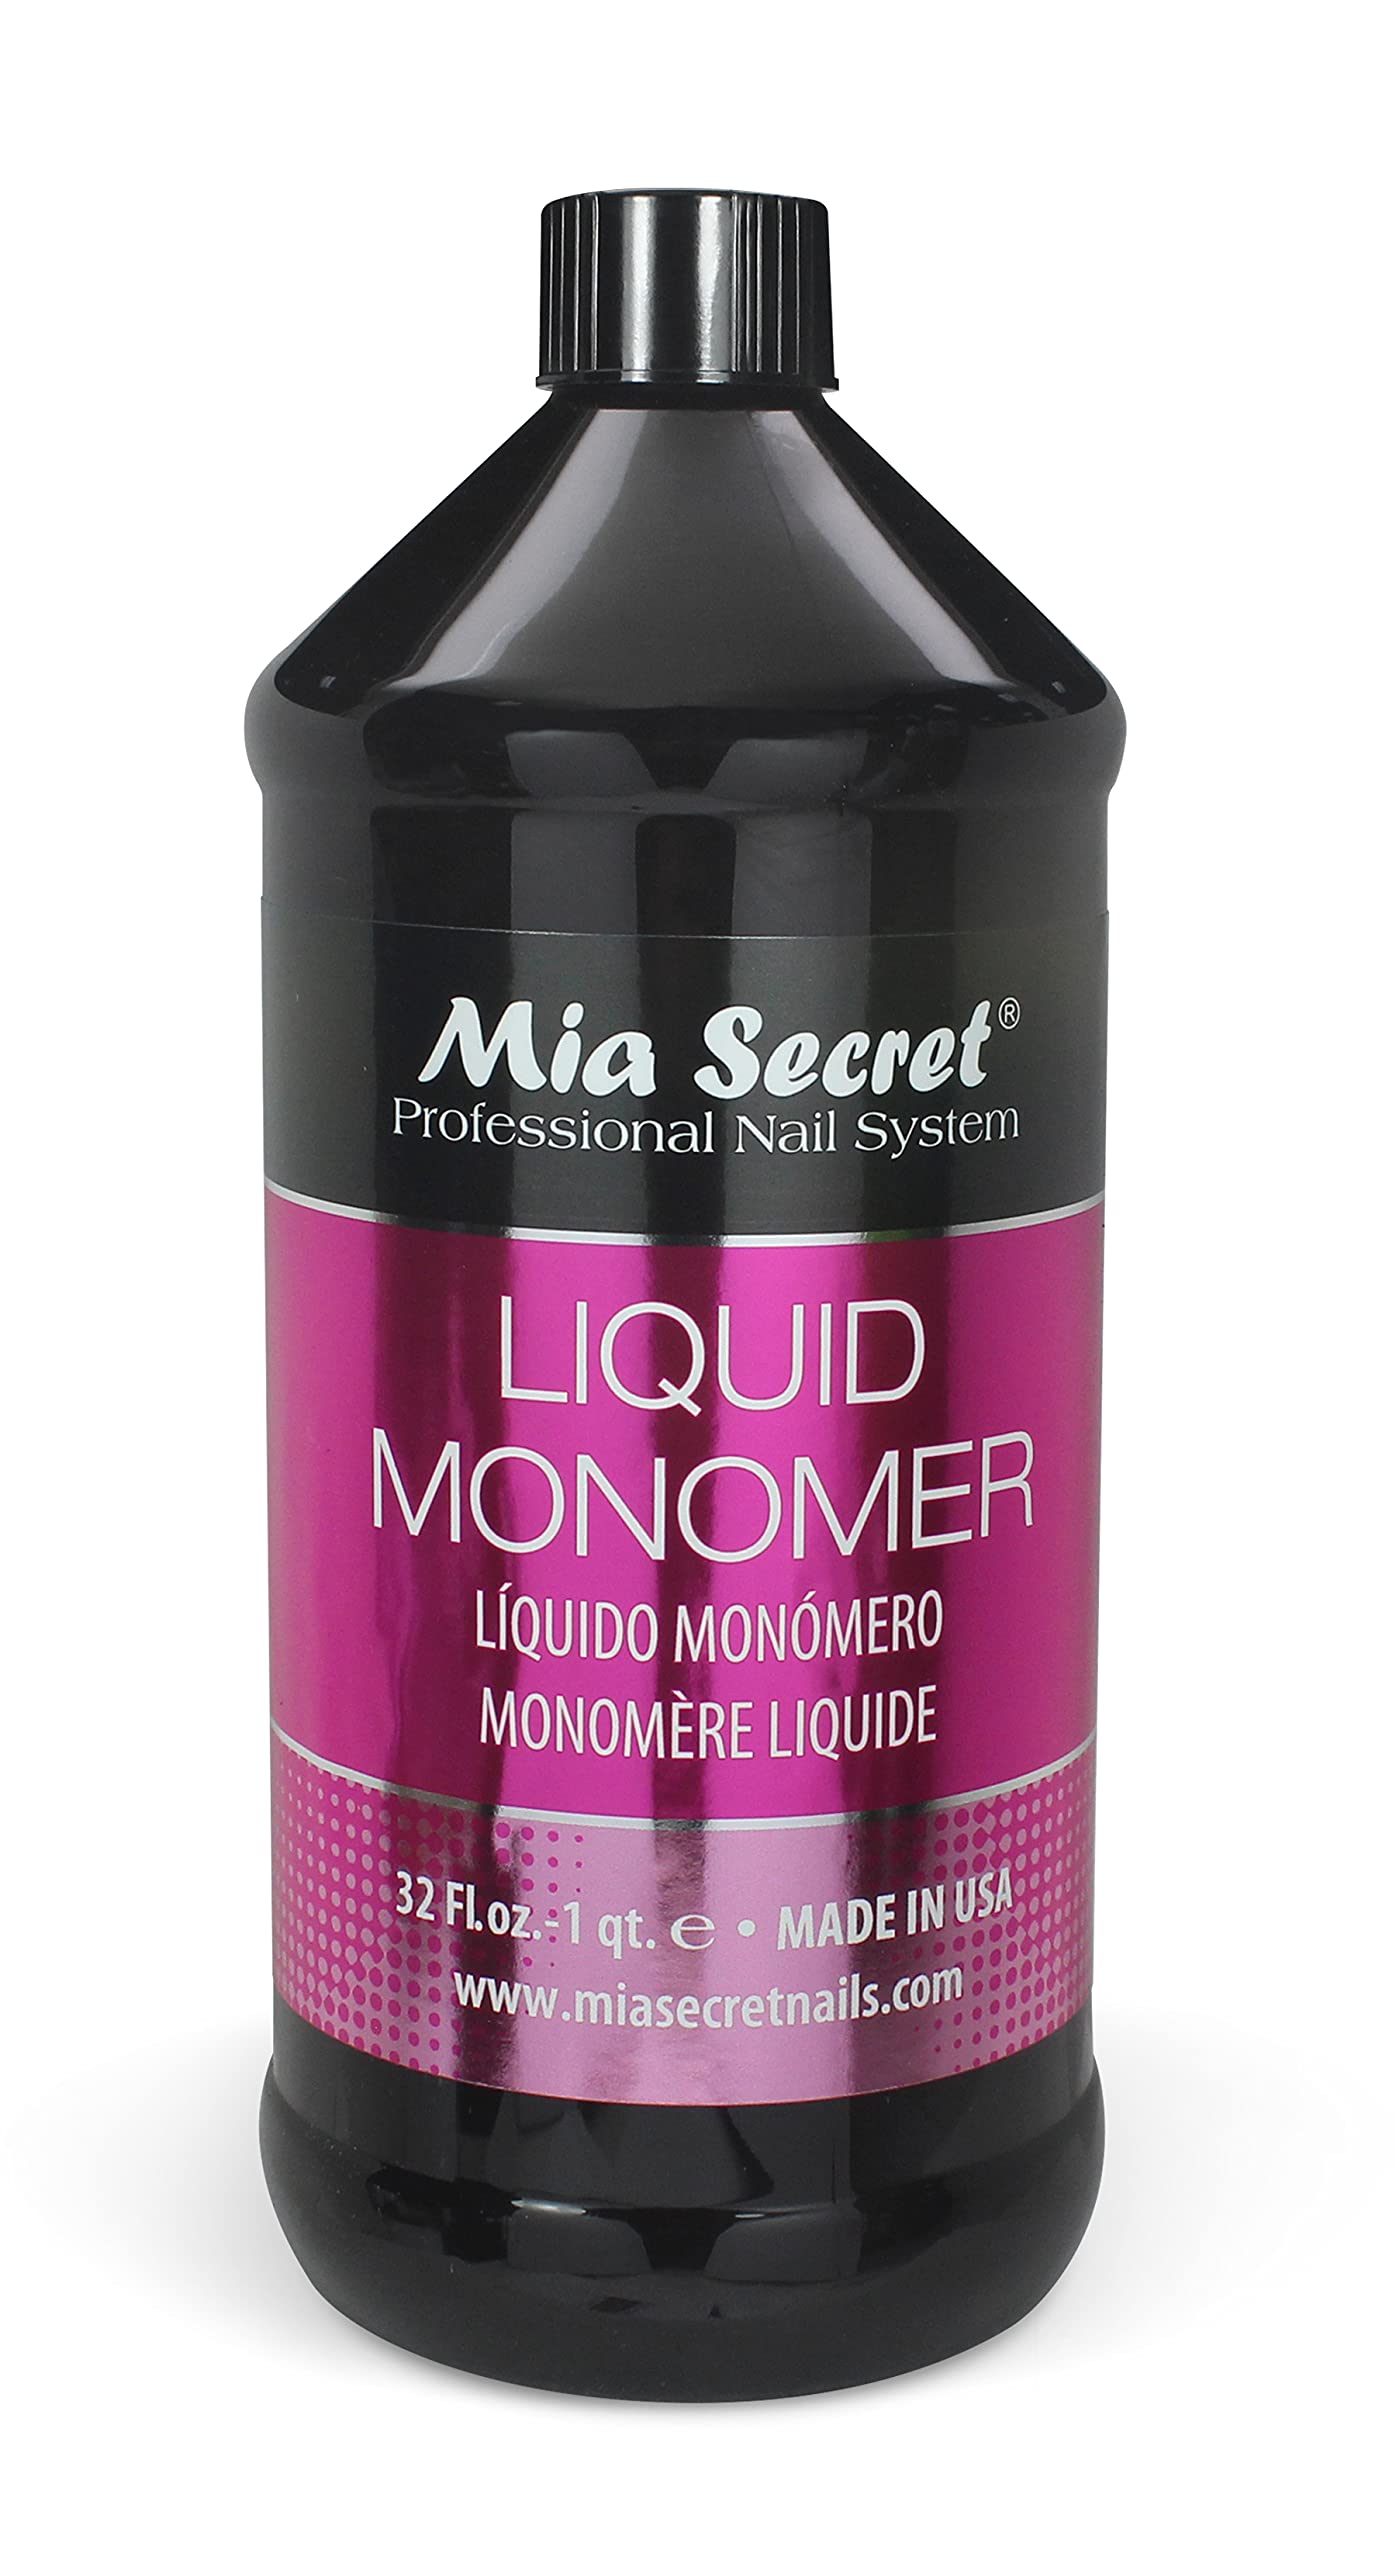 Mia Secret Monomère liquide de 32 oz - Liquide acrylique professionnel pour poudre acrylique - Monomère EMA - Liquide monomère pour ongles - Liquide acrylique pour ongles monomère EMA